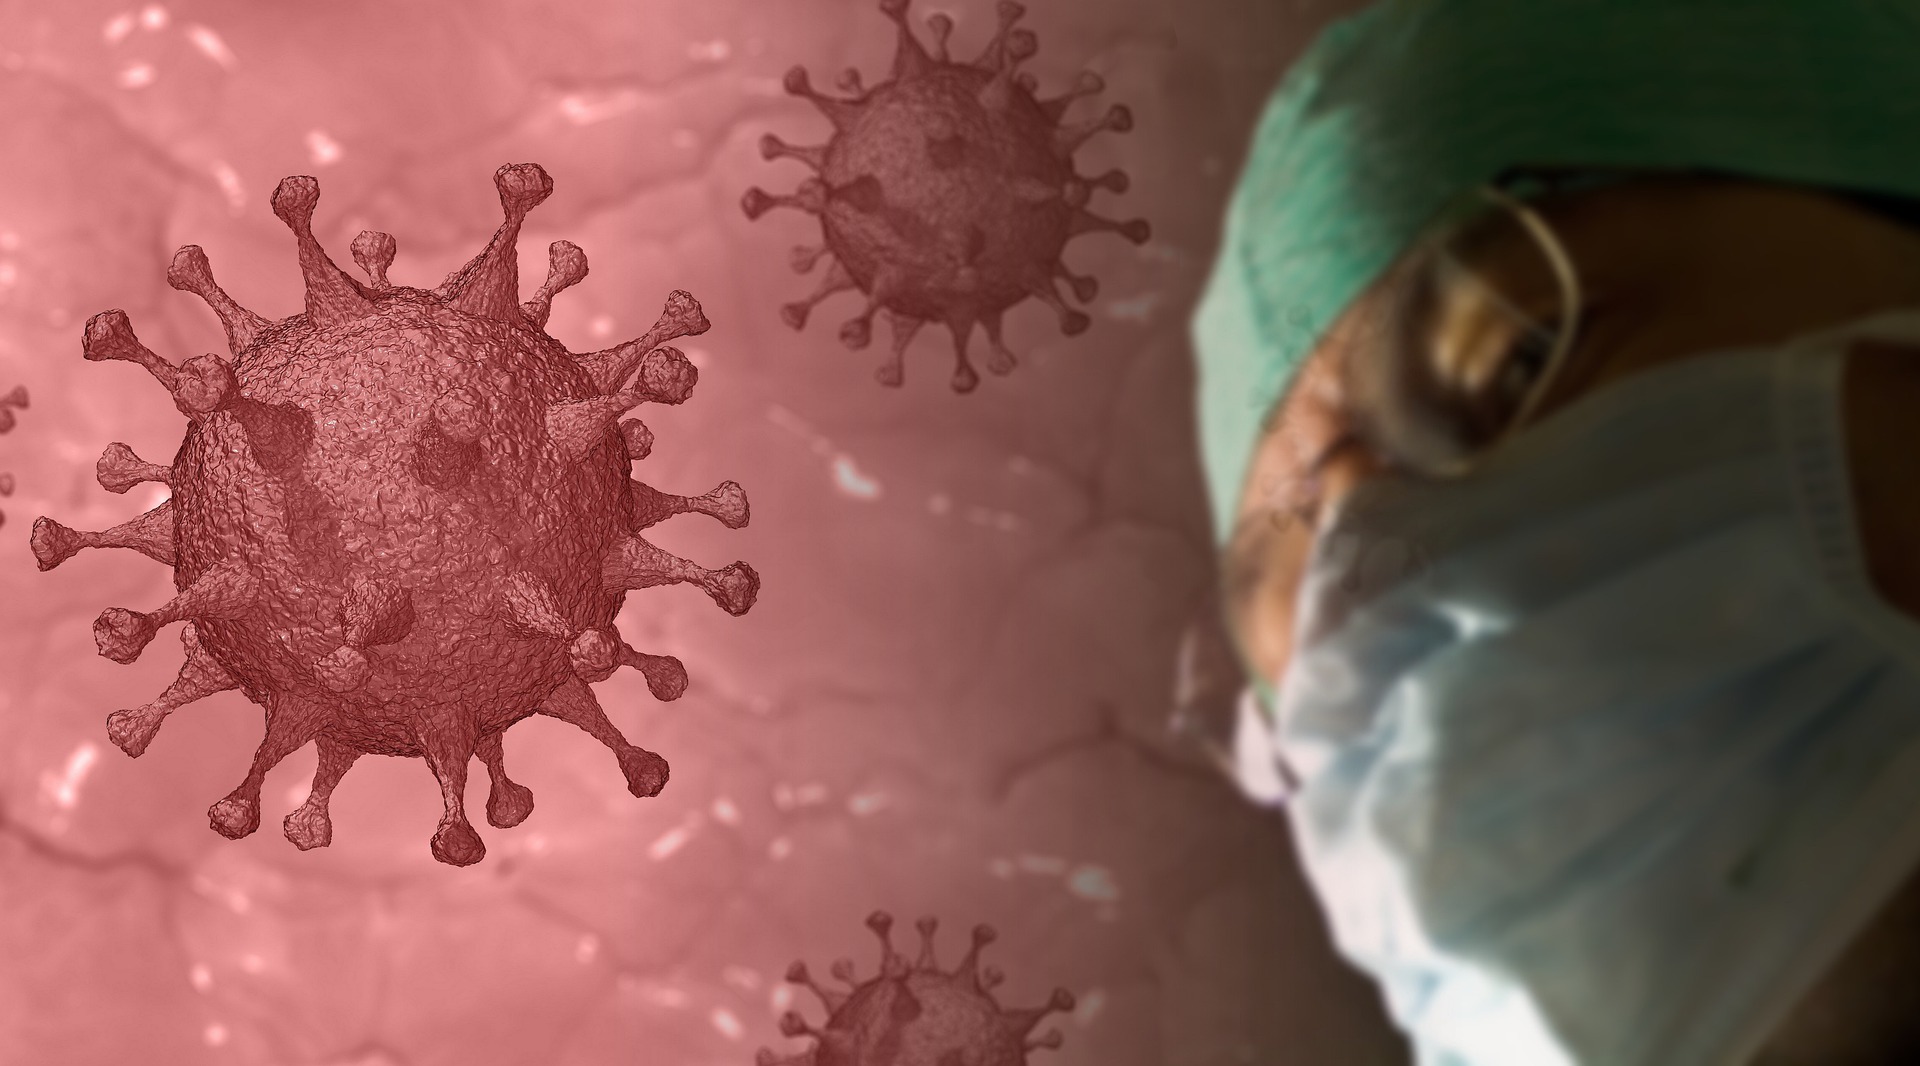 देश में 24 घंटे में कोरोना वायरस के 18,870 नए मामले आए सामने